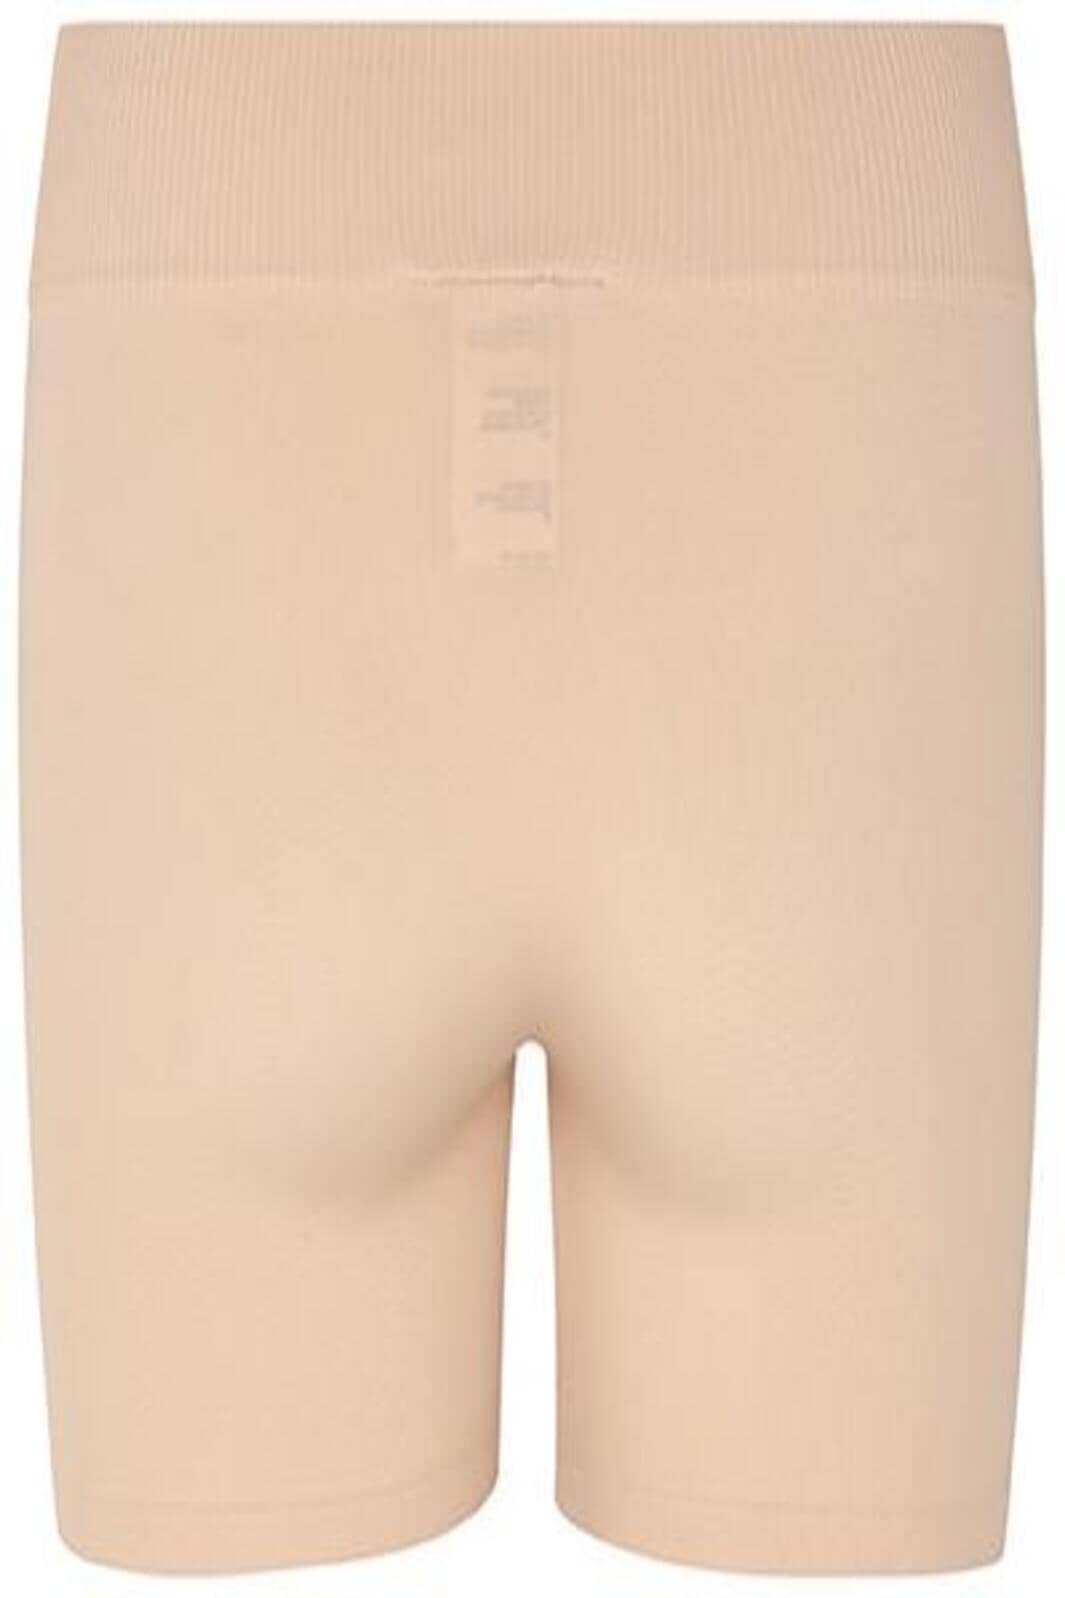 MbyM - Kiran Shorts - Powder Shorts 